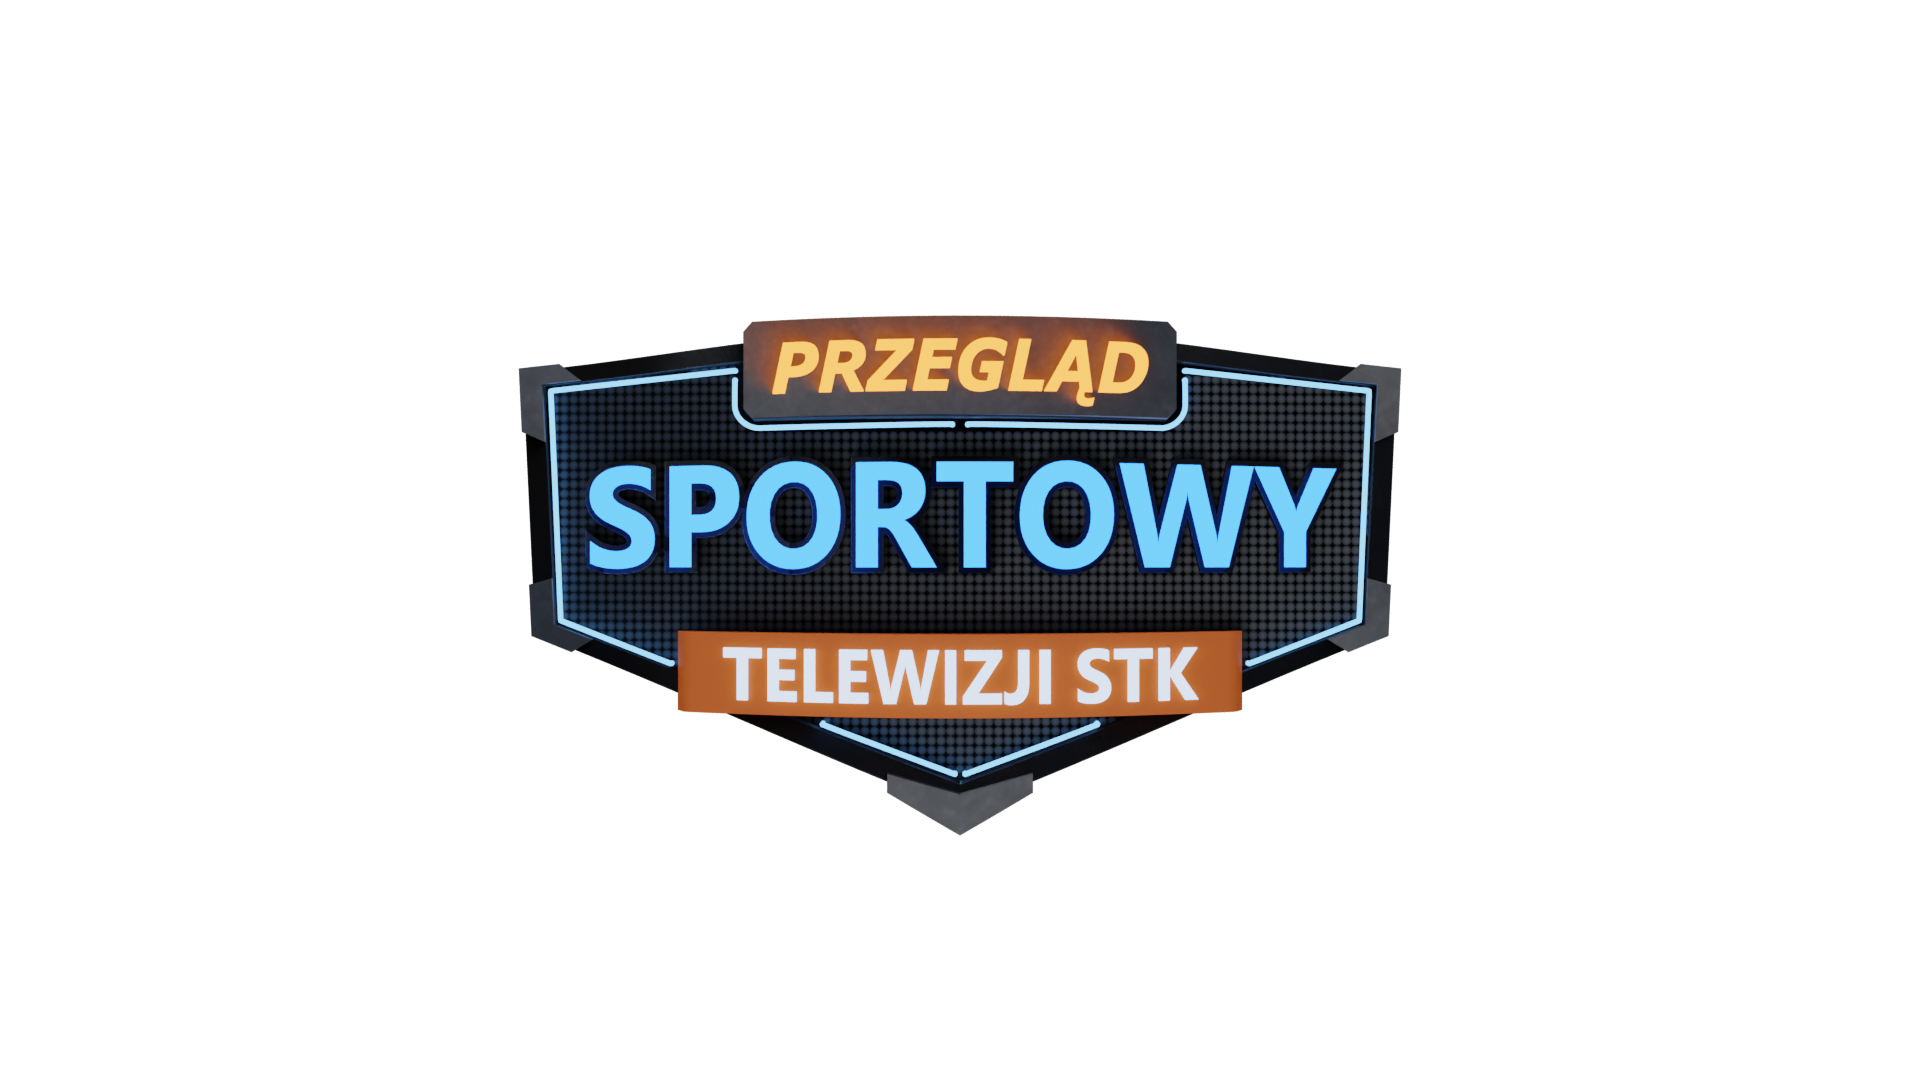 Przegląd Sportowy Telewizji STK